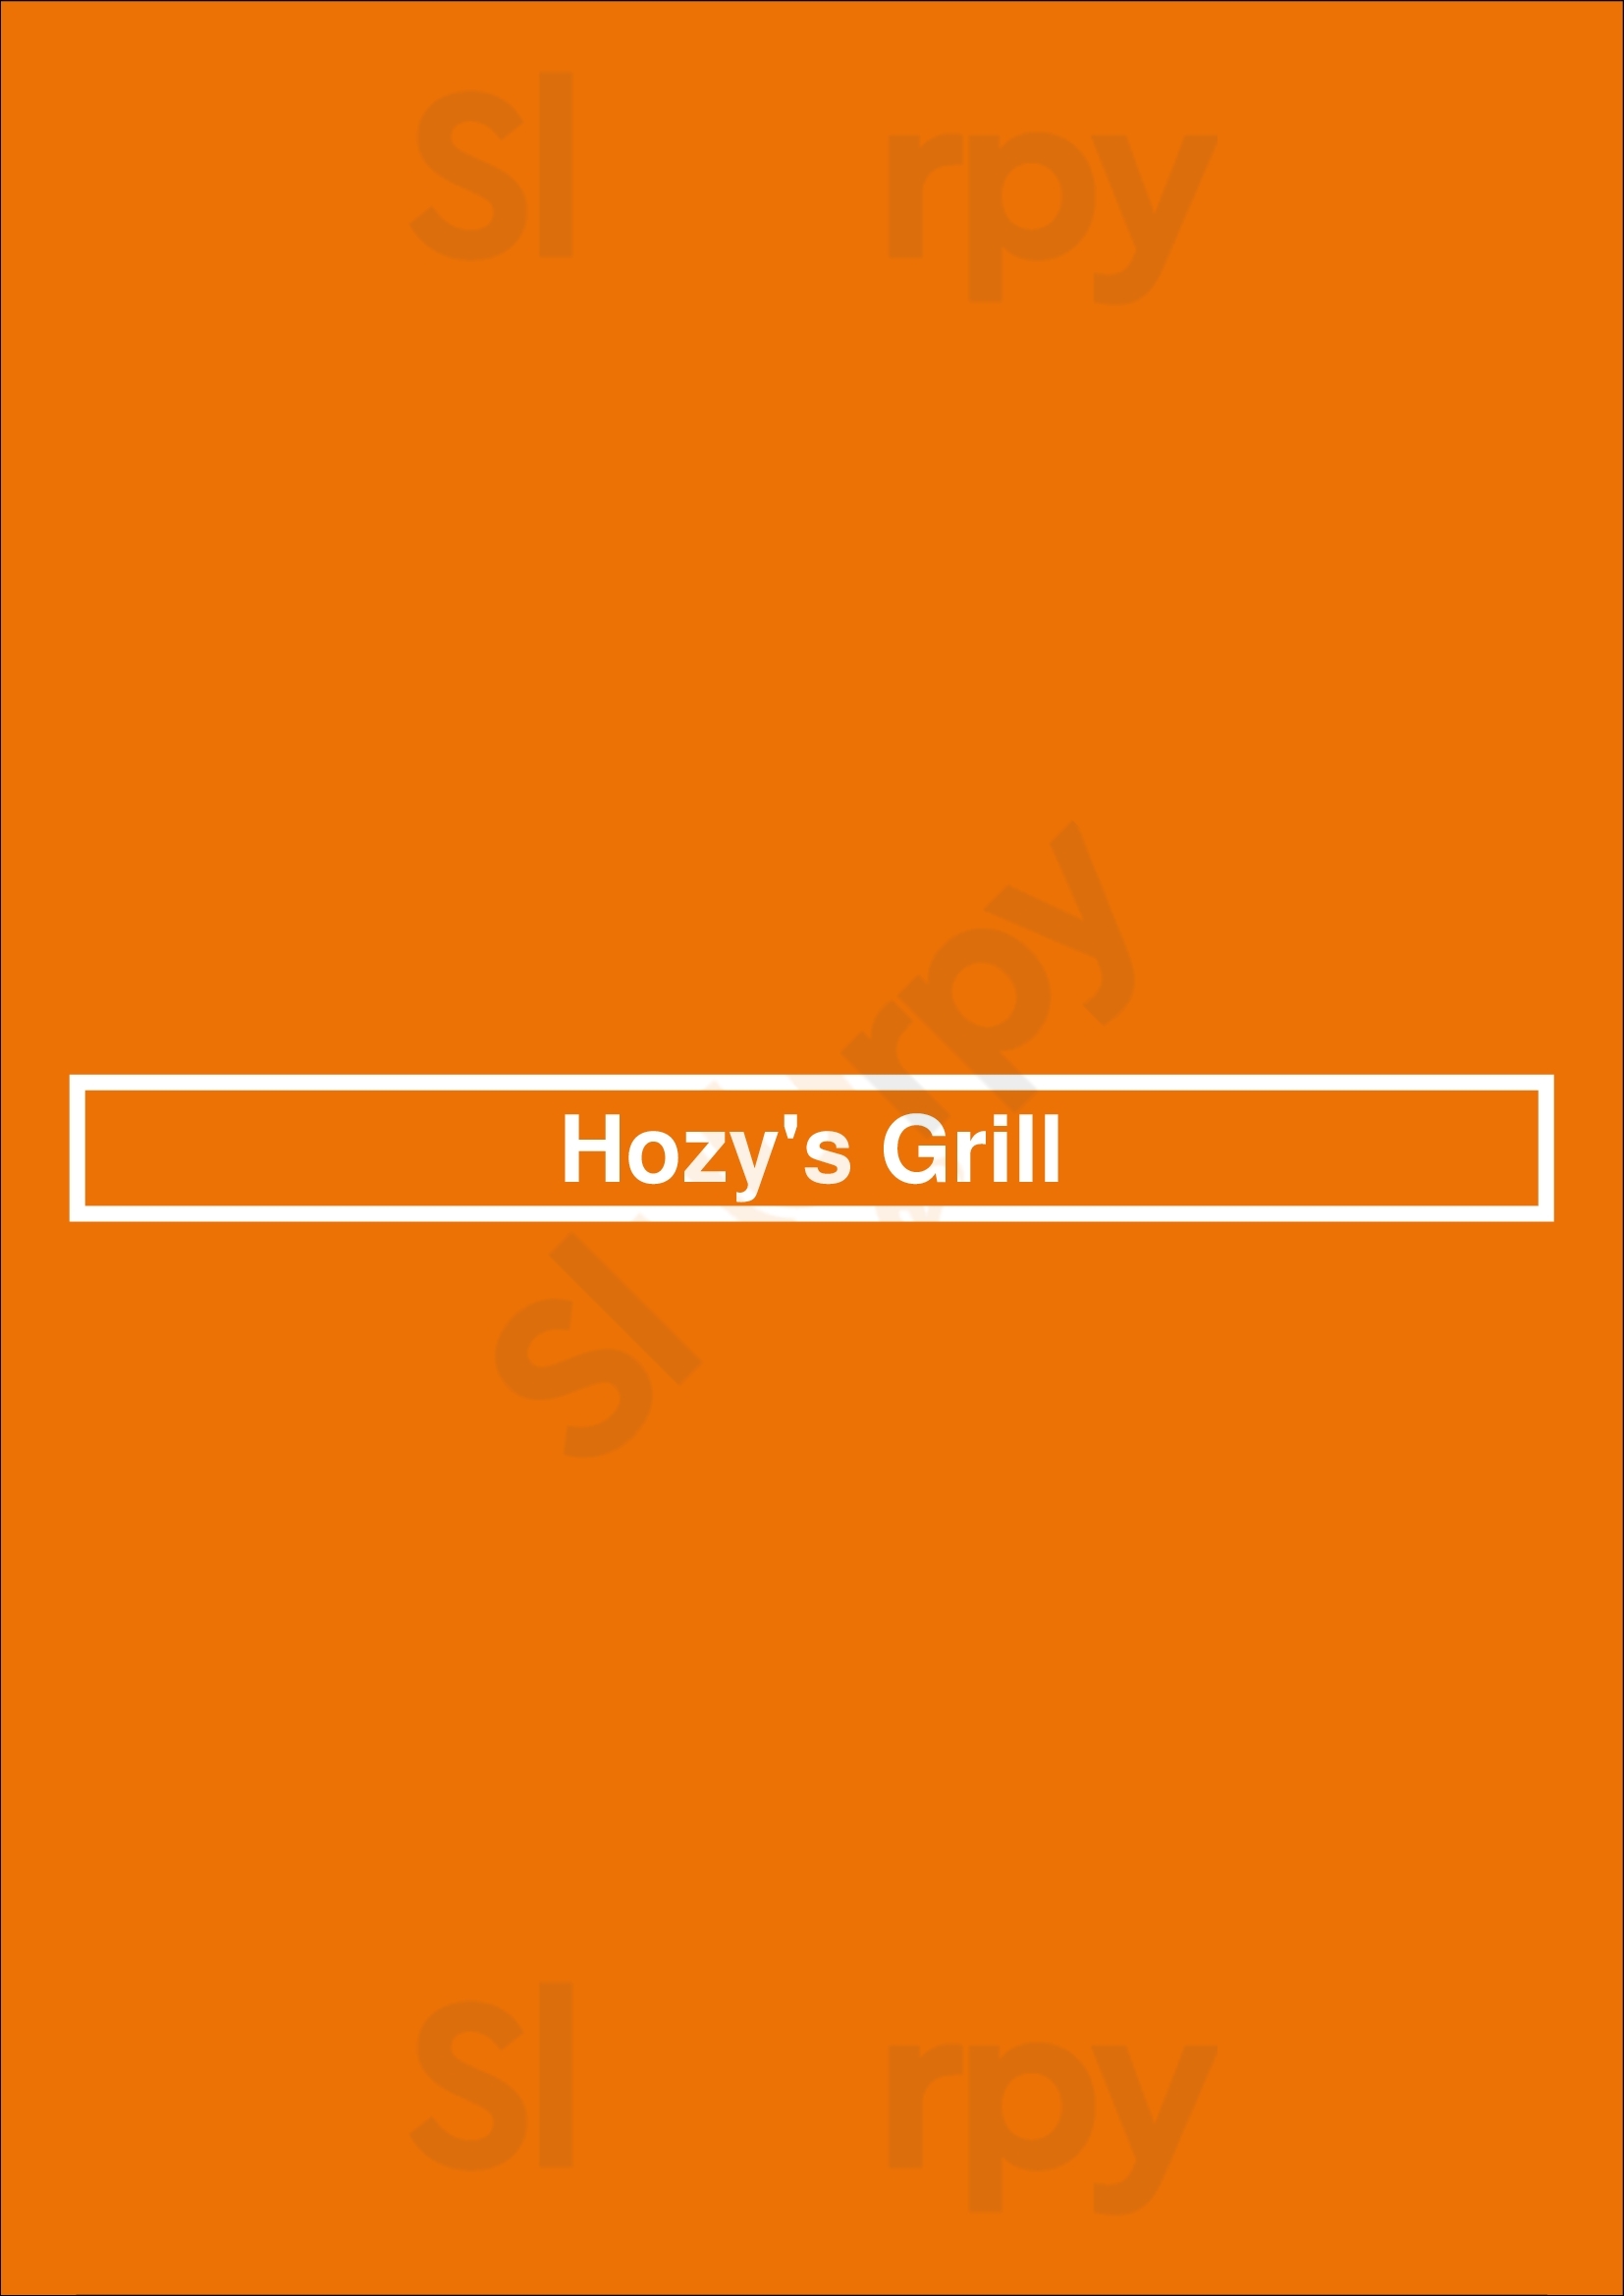 Hozy's Grill Santa Paula Menu - 1